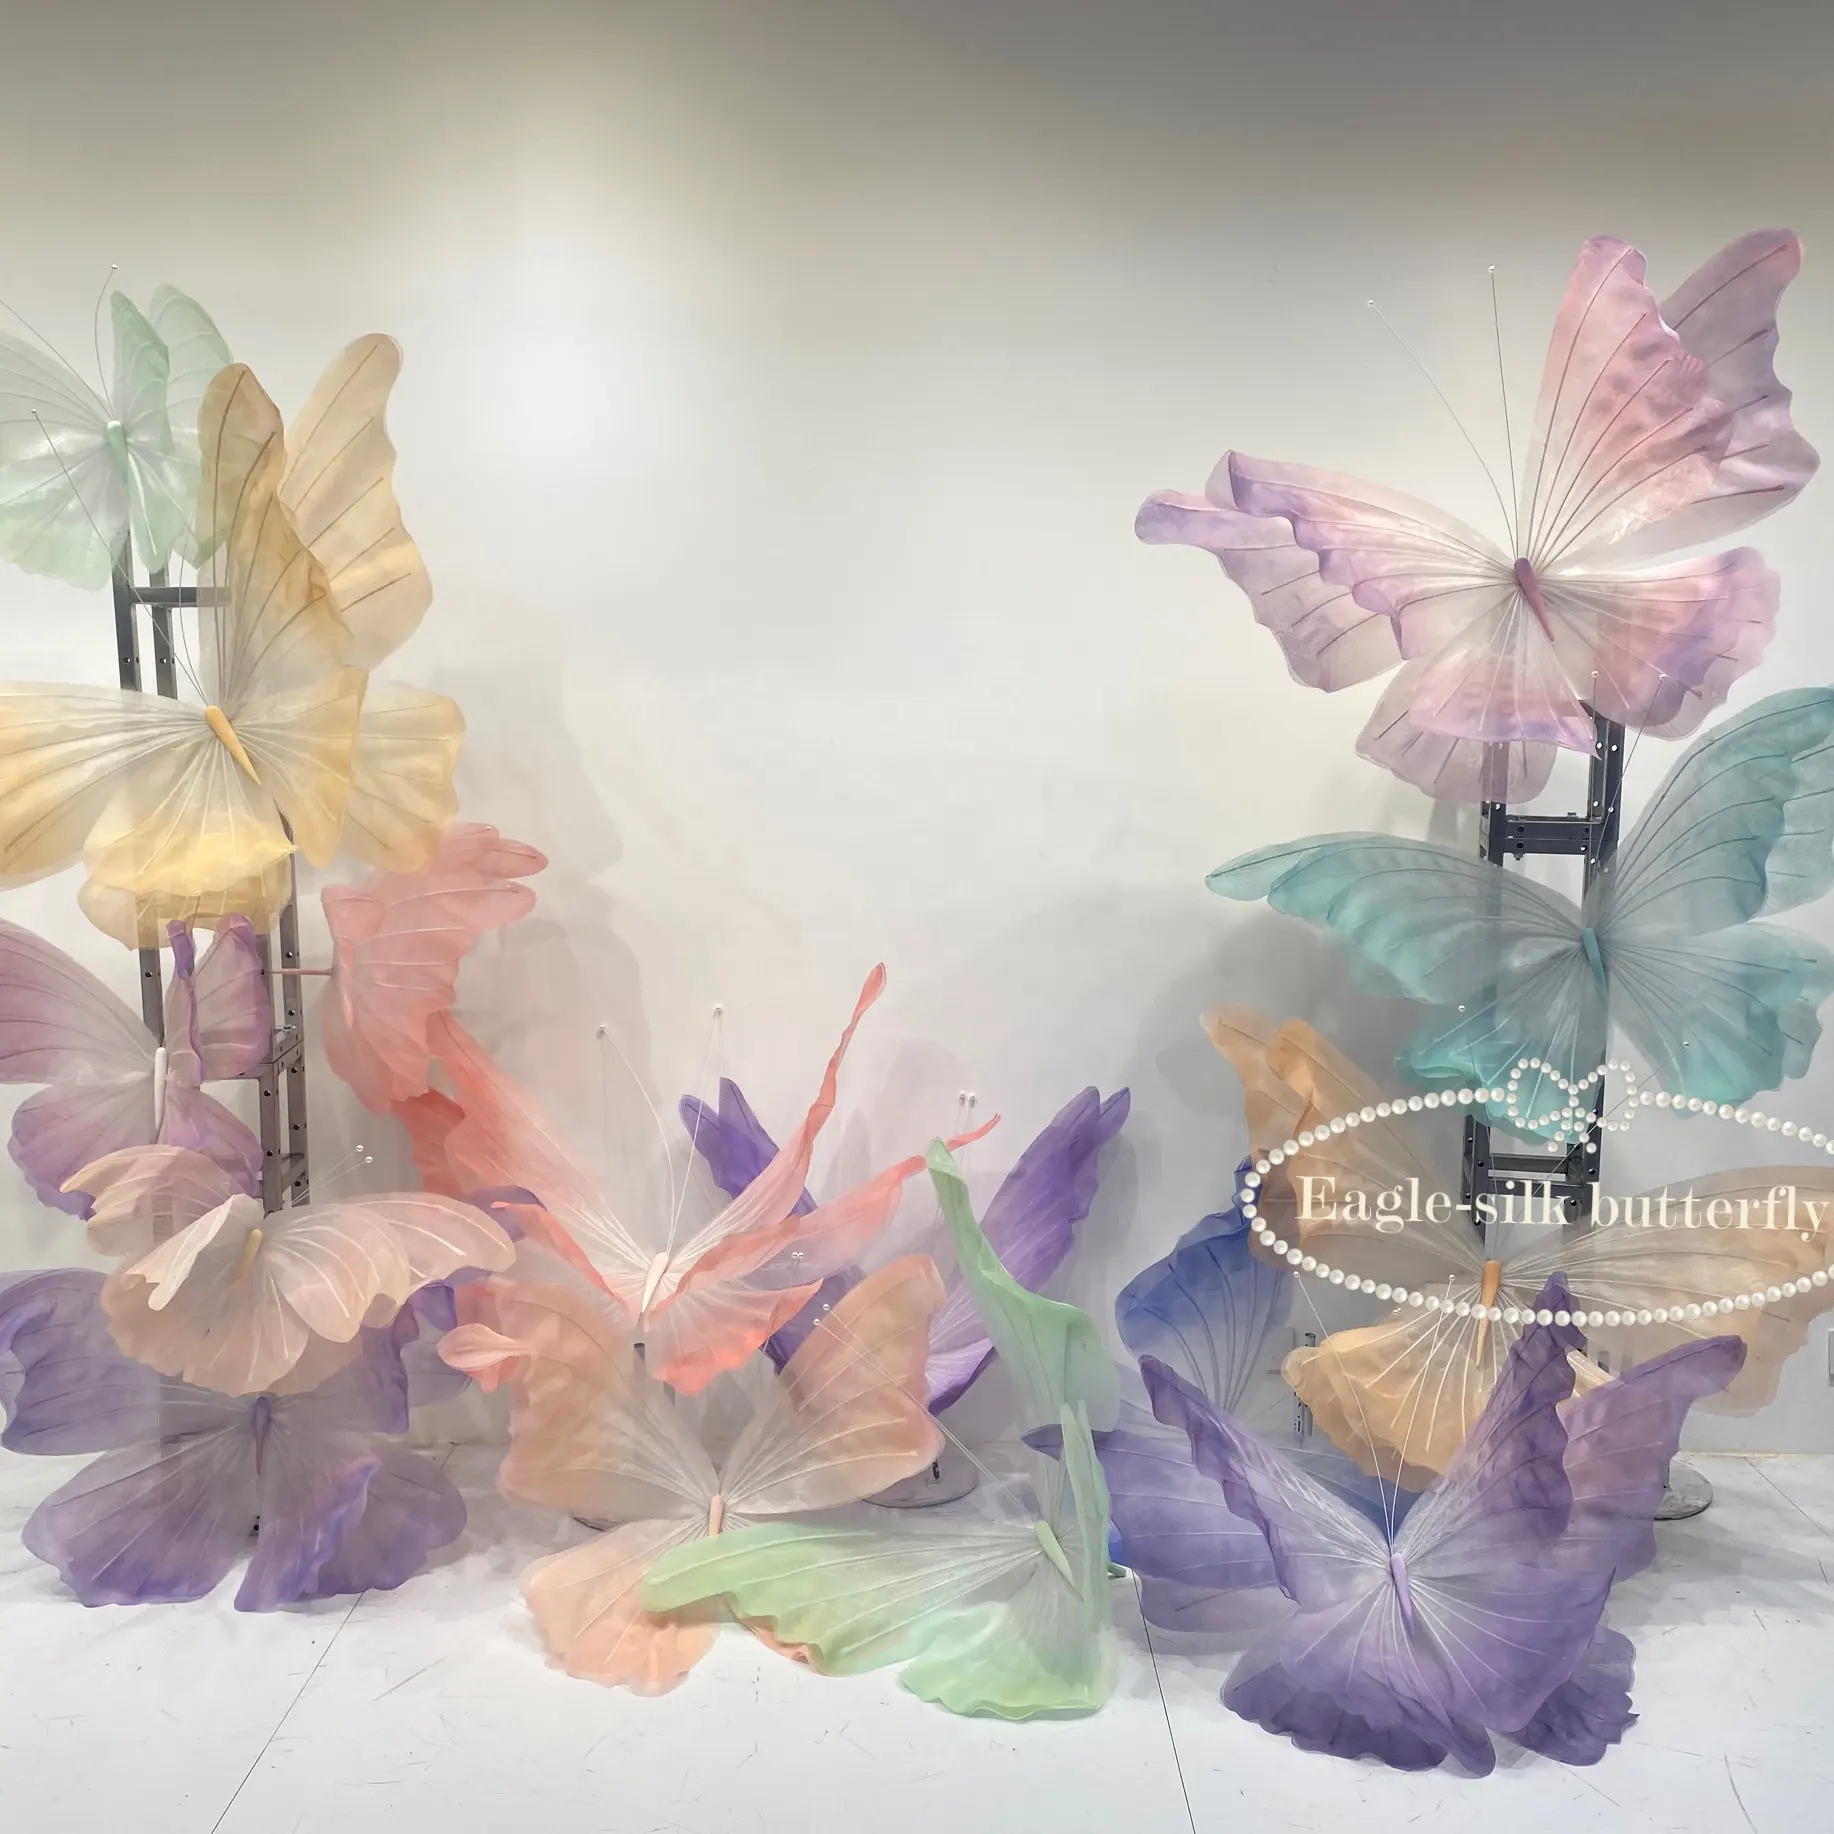 K-100 Fantasy Silk Butterfly Giant borboleta artificial decoração para casamento Clothing store luxury shop decor